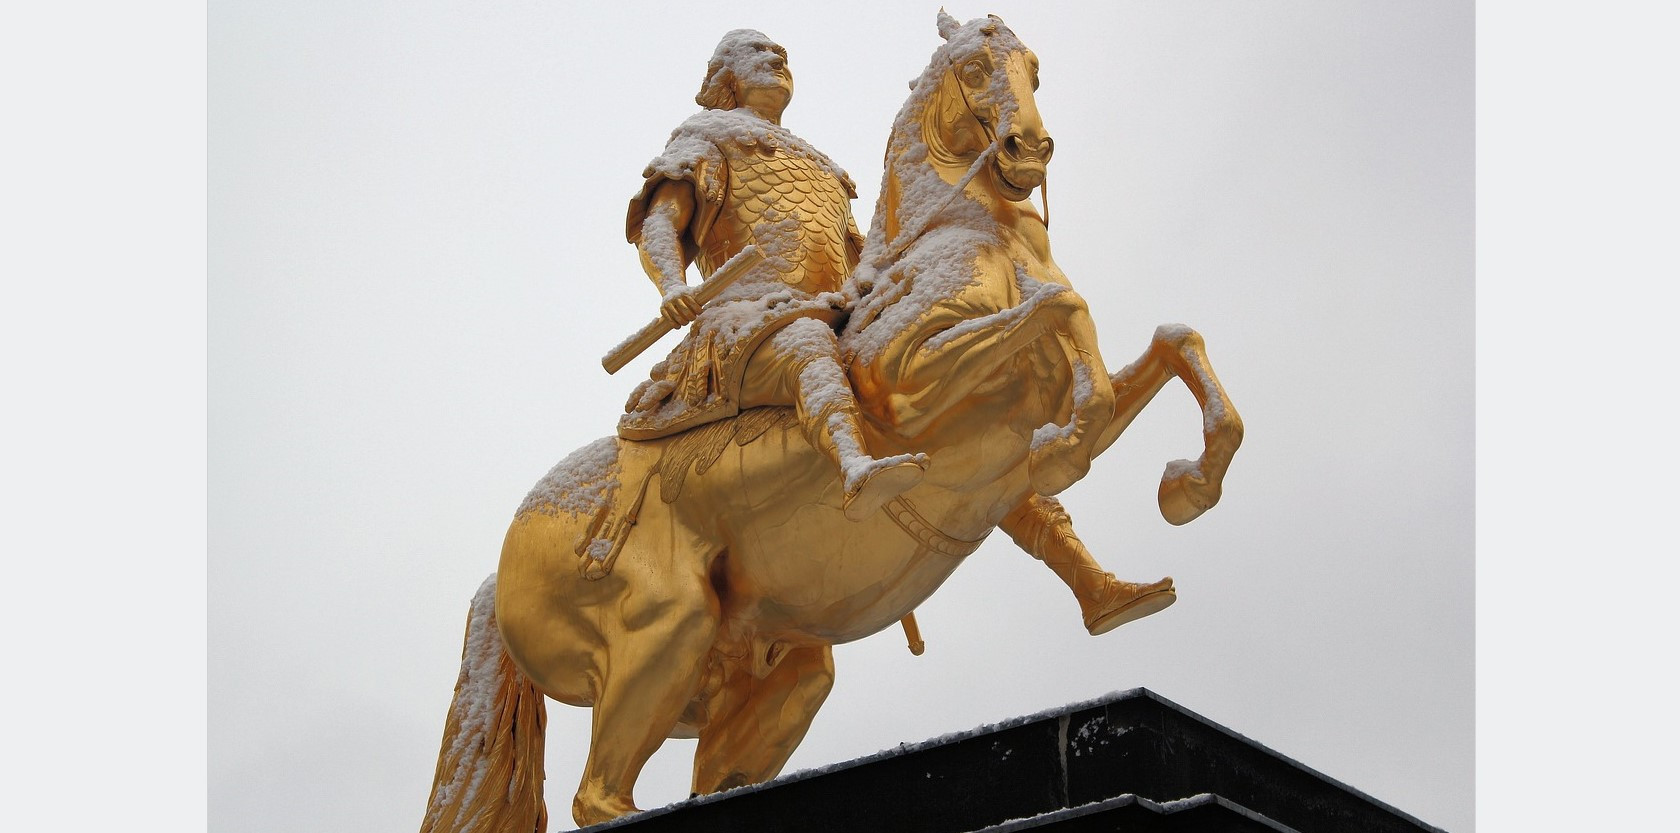 Foto vom Goldenen Reiter, Goldene Statue in Dresden zeigt Reiter auf Pferd.